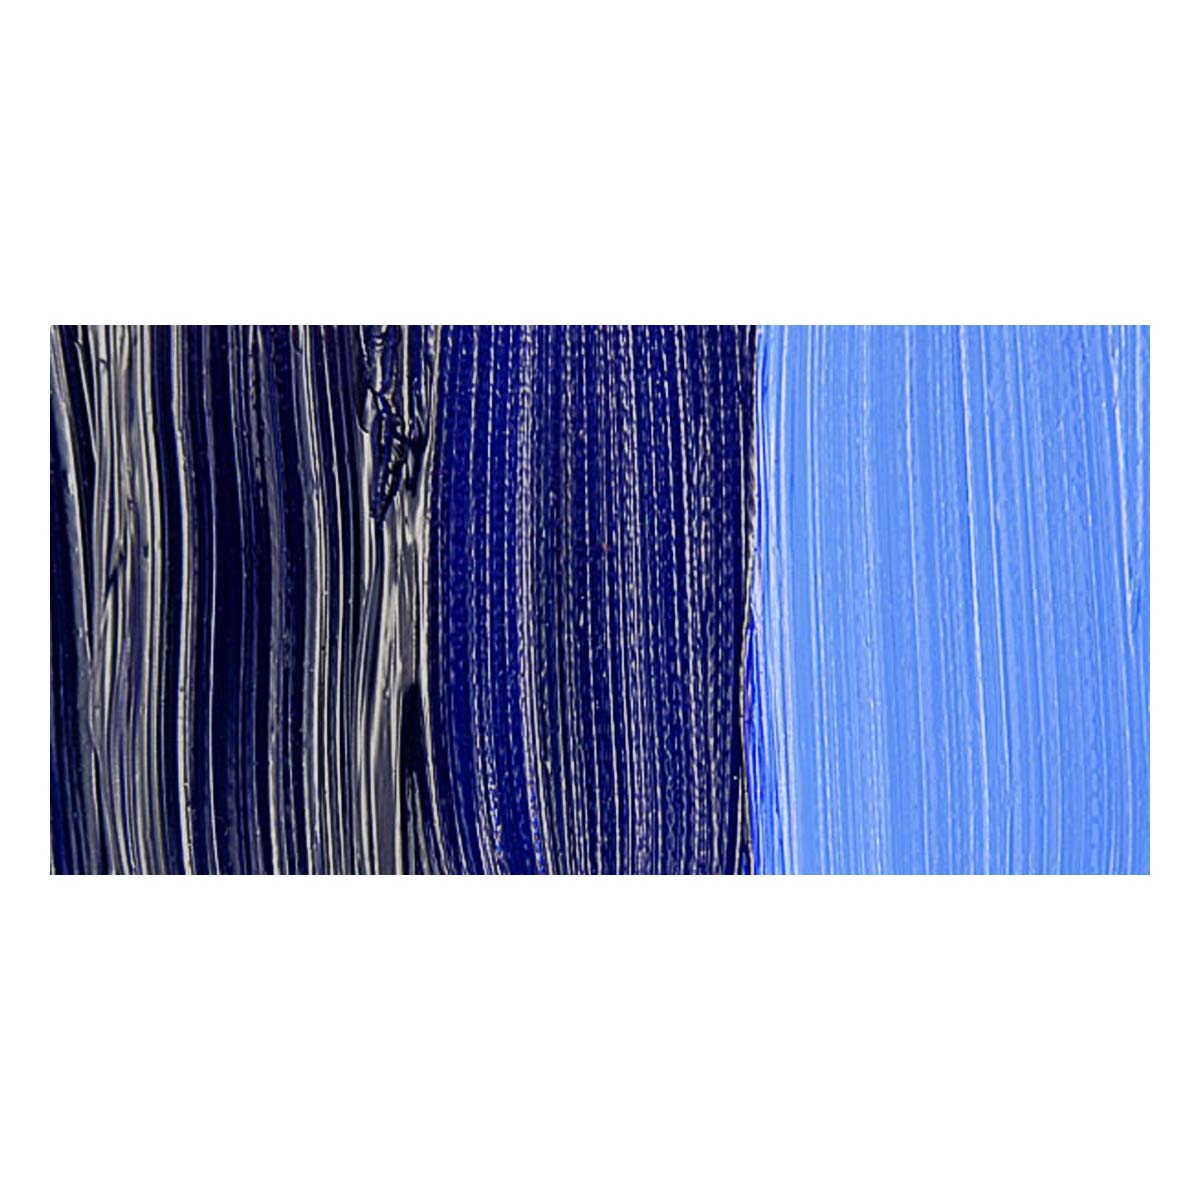 Da Vinci Ultramarine Blue Artist Oil Paint - 37mL